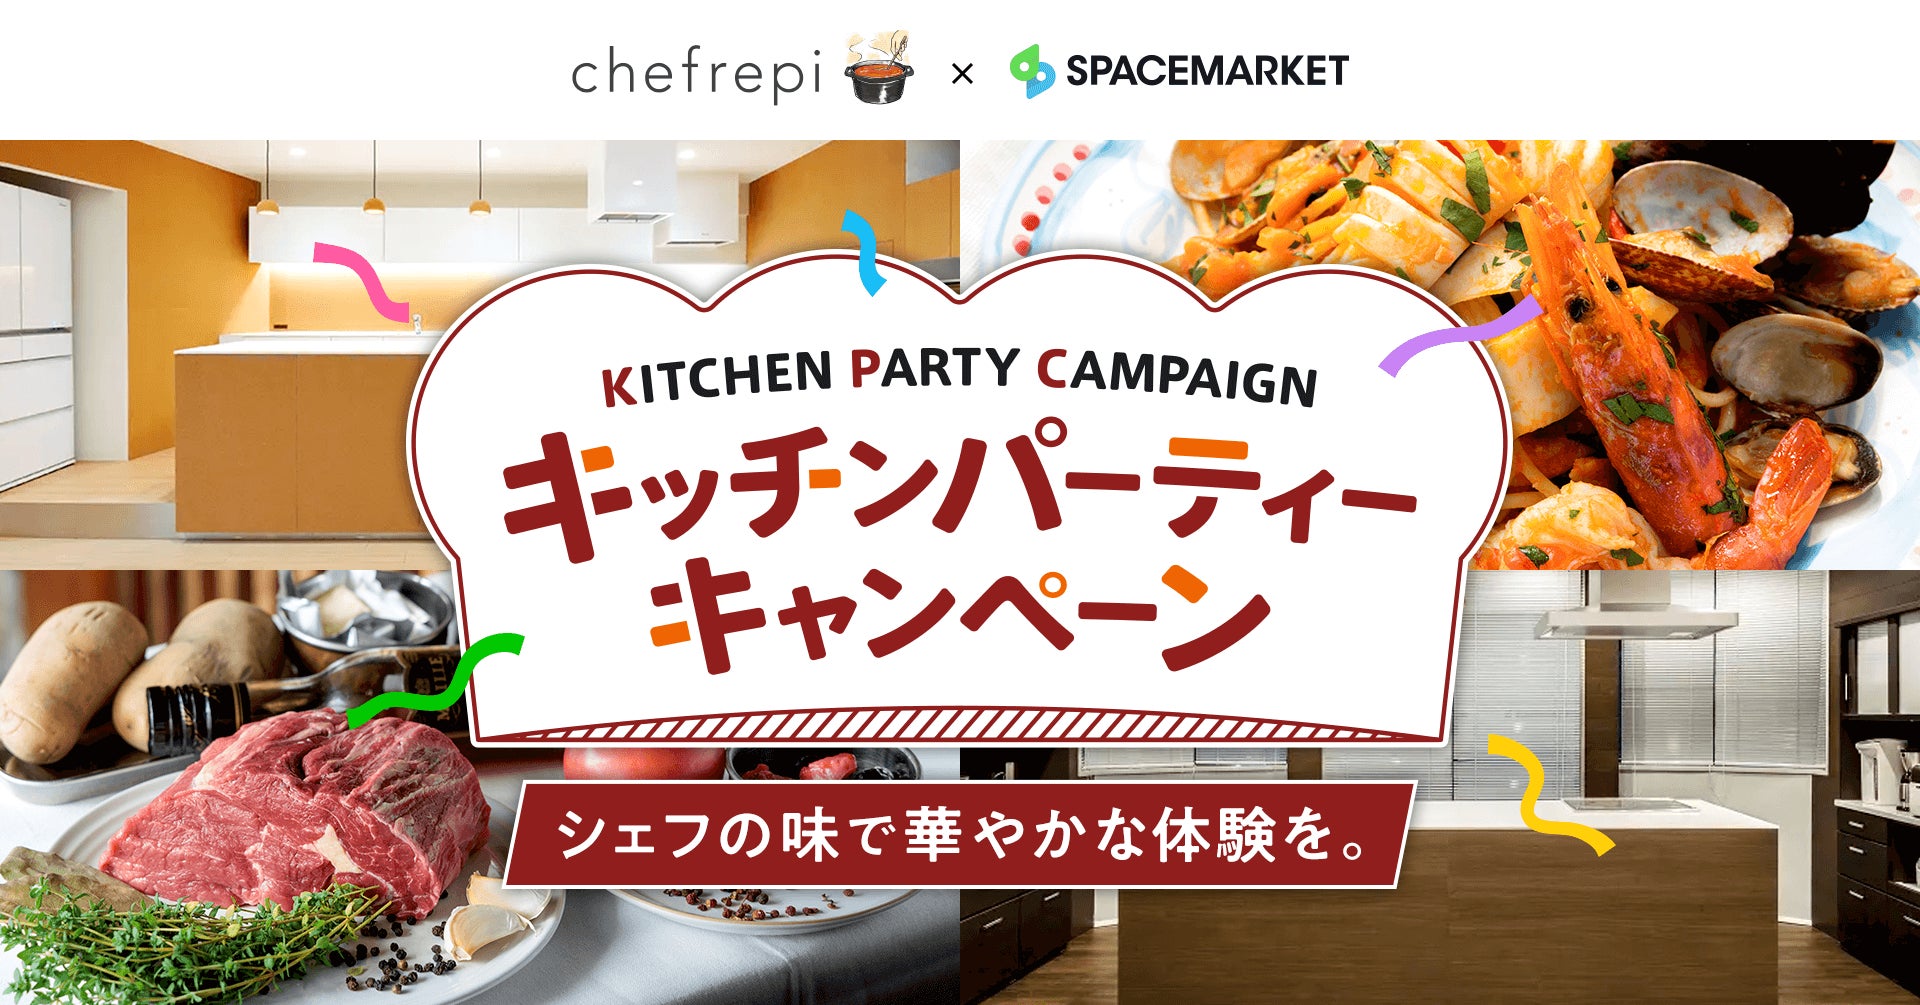 【スペースマーケット×シェフレピ】シェフ監修のレシピを本格キッチンで作って楽しむキャンペーン開始